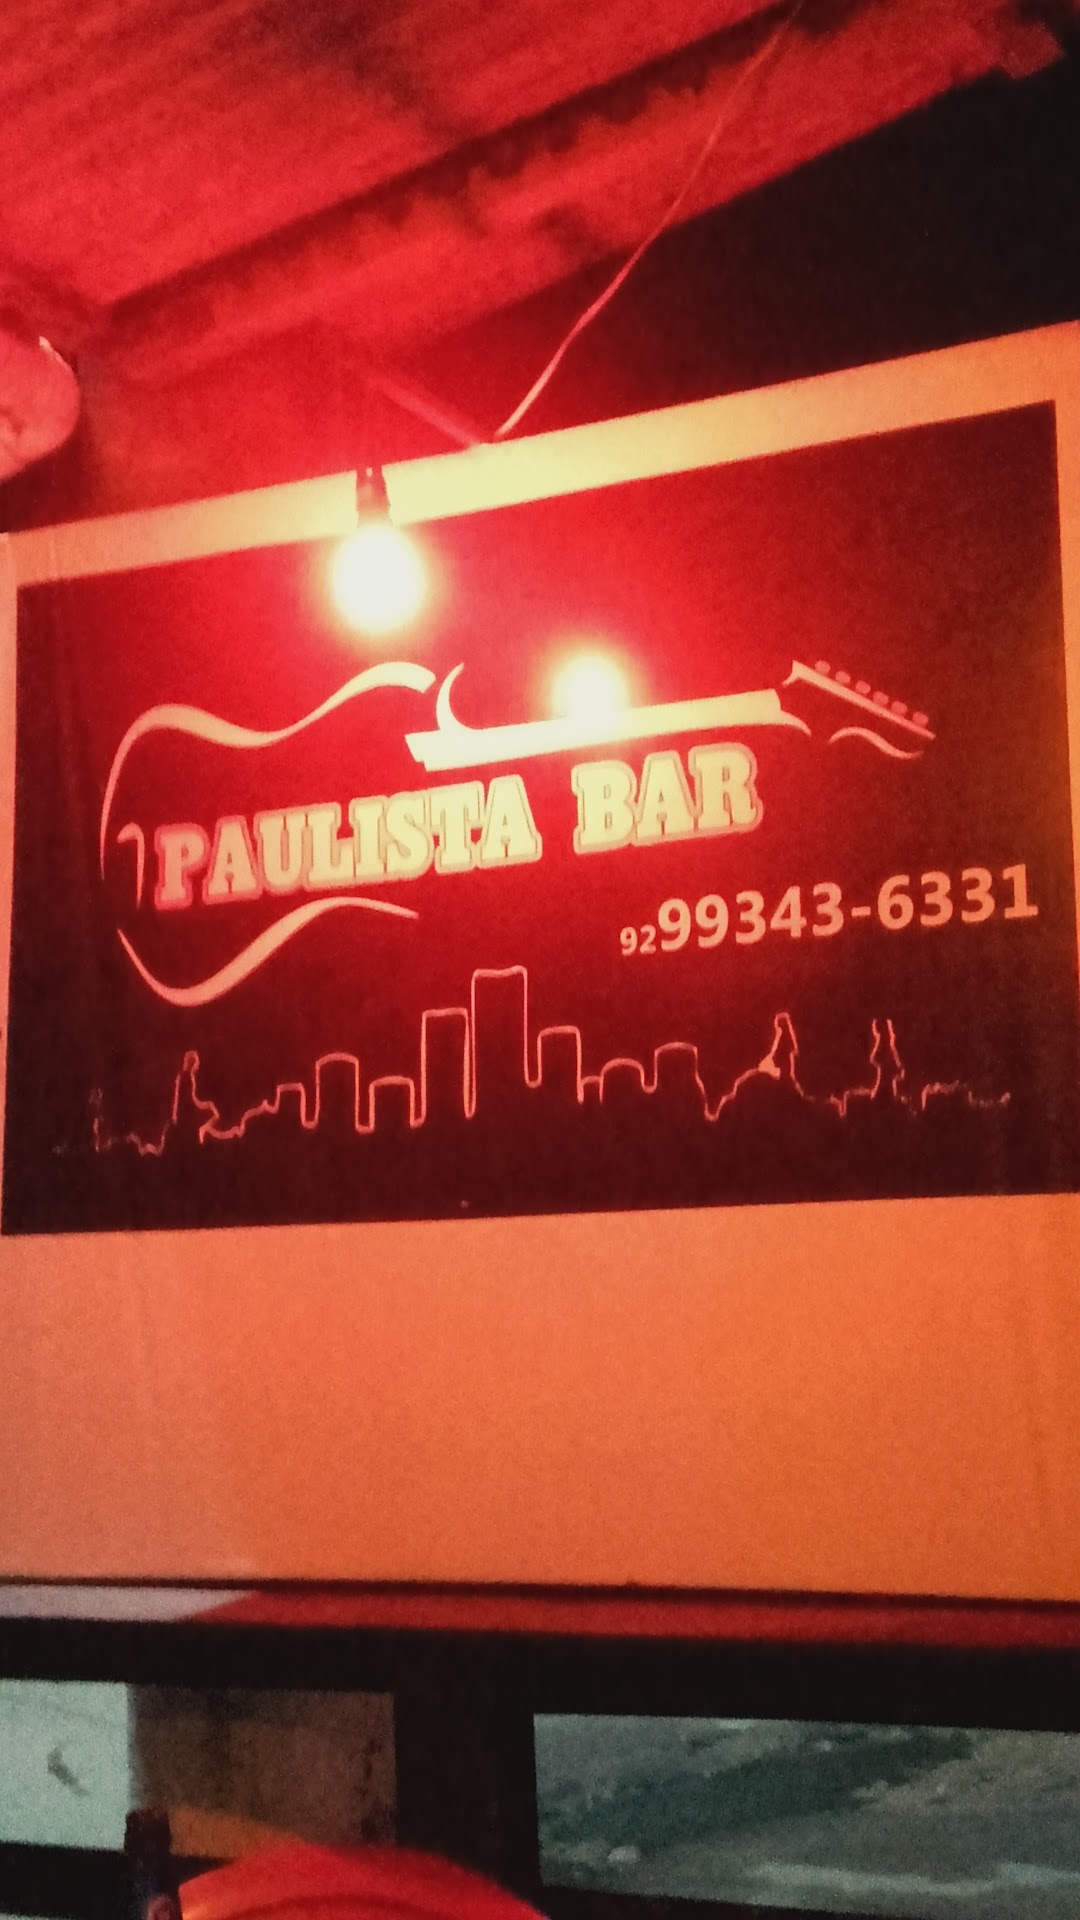 Paulista bar